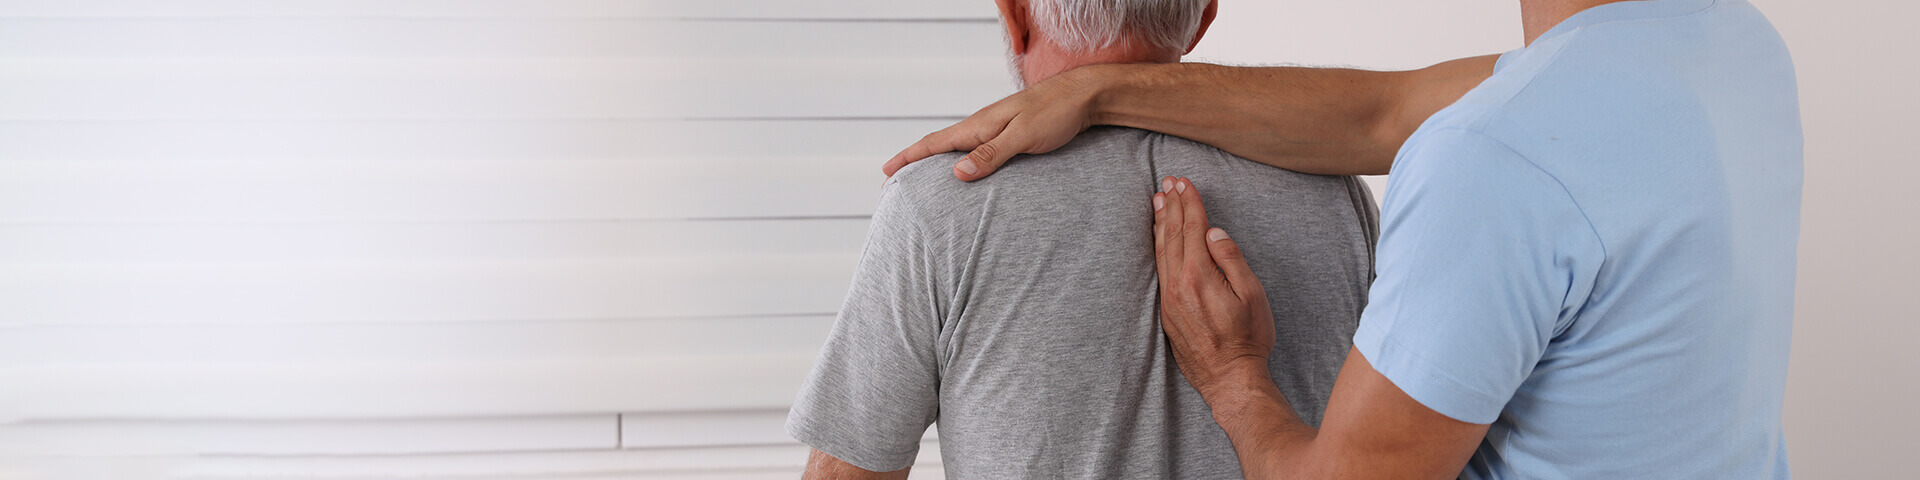 Chiropraktiker / Osteopath behandelt den Rücken eines älteren Patienten